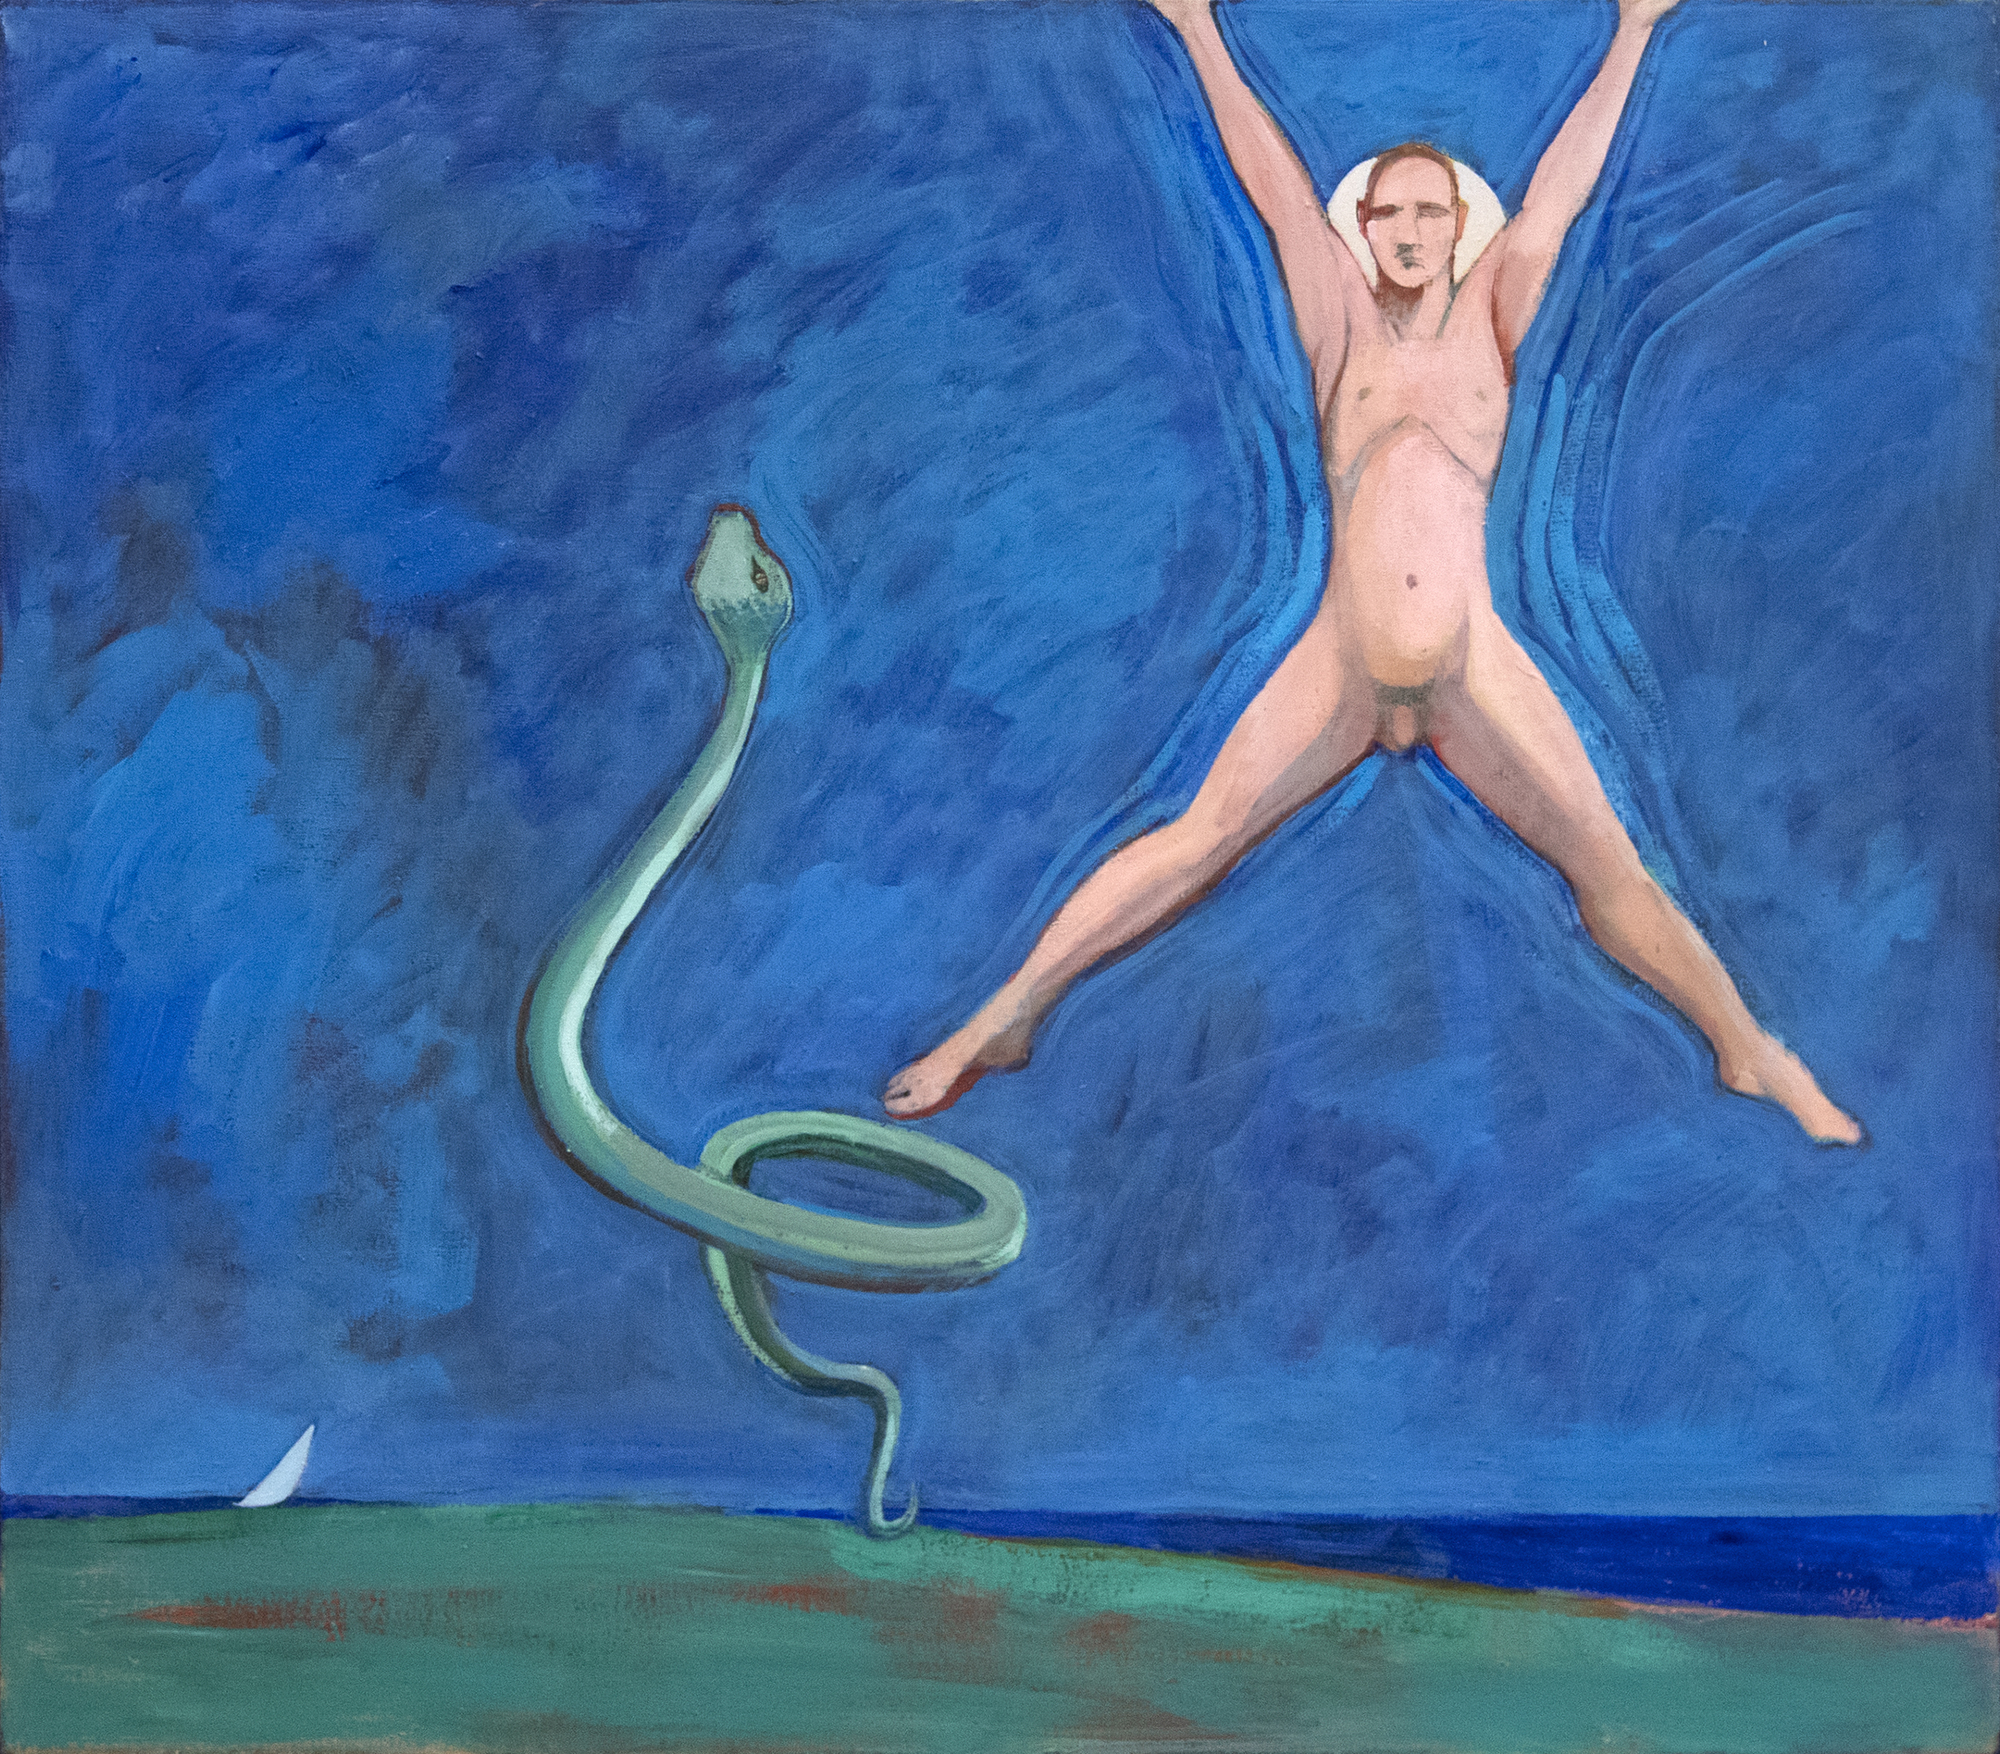 وليام ثيوفيلوس براون-بدون عنوان (اللوحة مع القفز الرجل والثعبان)-الأكريليك علي قماش-38 x 42 في.